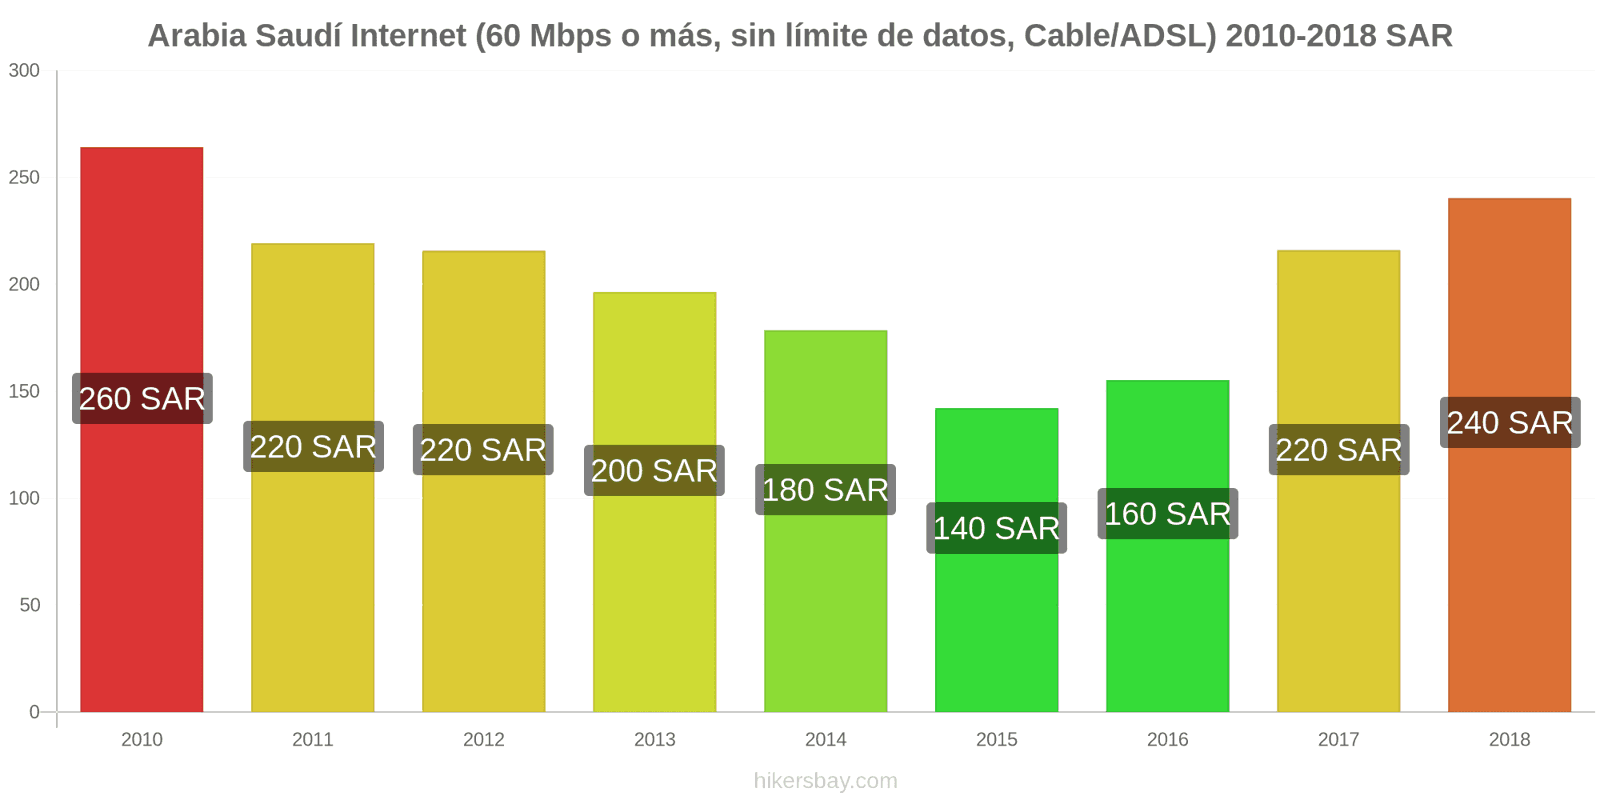 Arabia Saudí cambios de precios Internet (60 Mbps o más, datos ilimitados, cable/ADSL) hikersbay.com